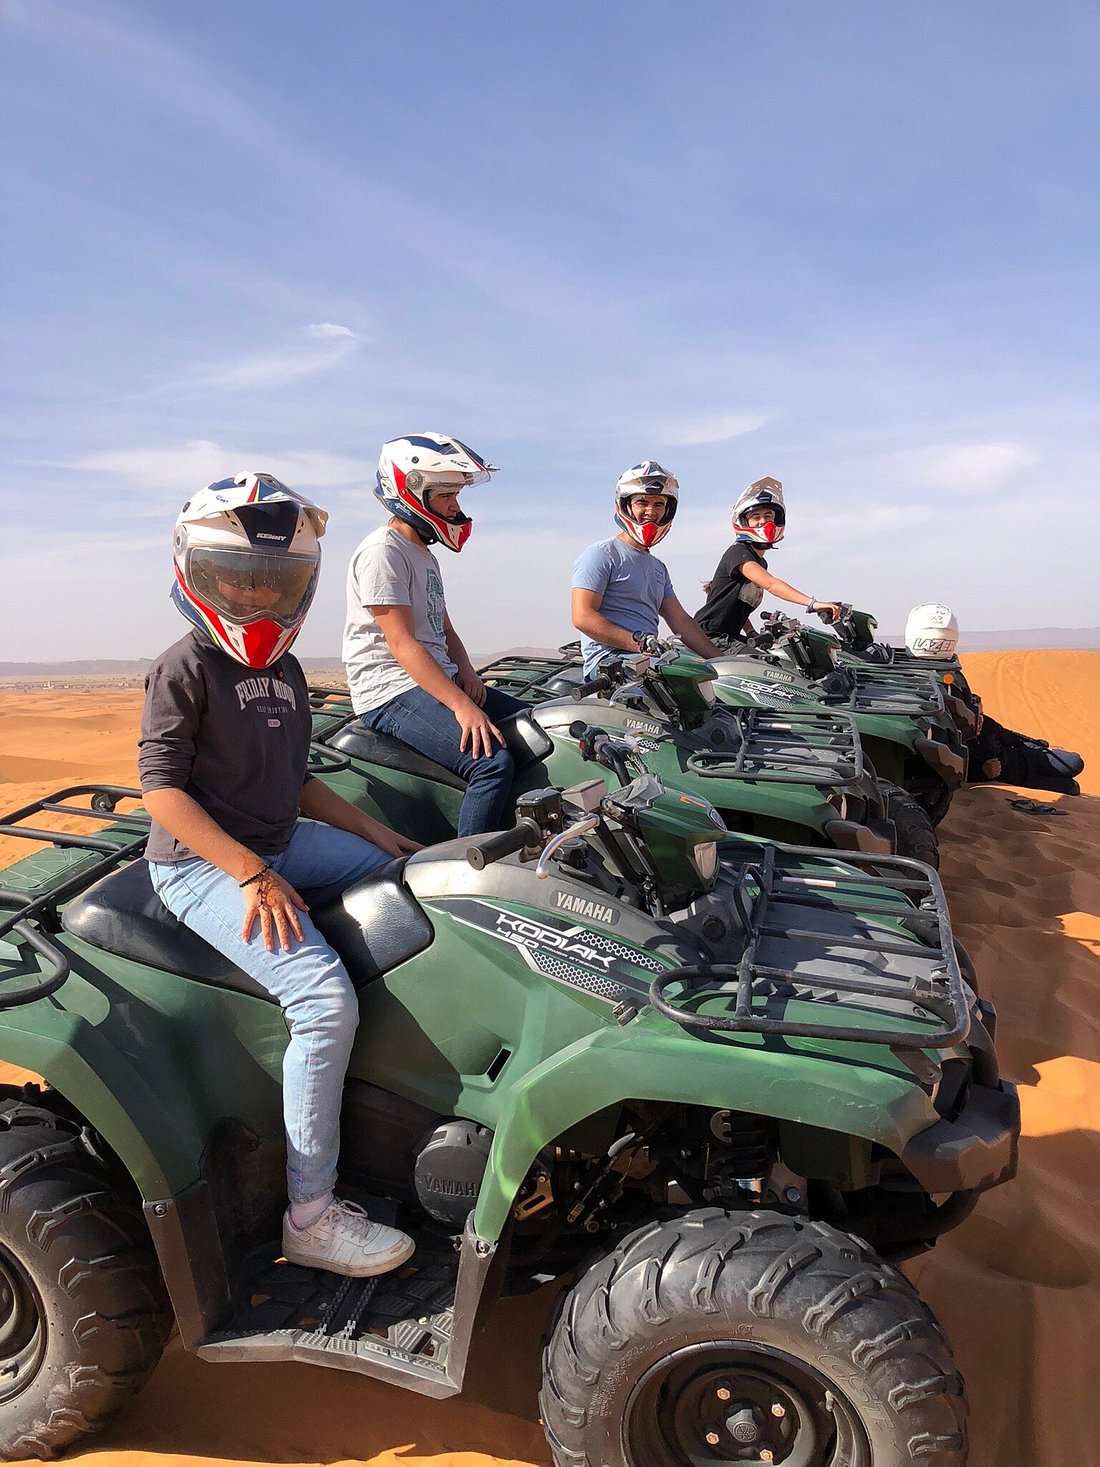 11 días Marruecos viaje del desierto